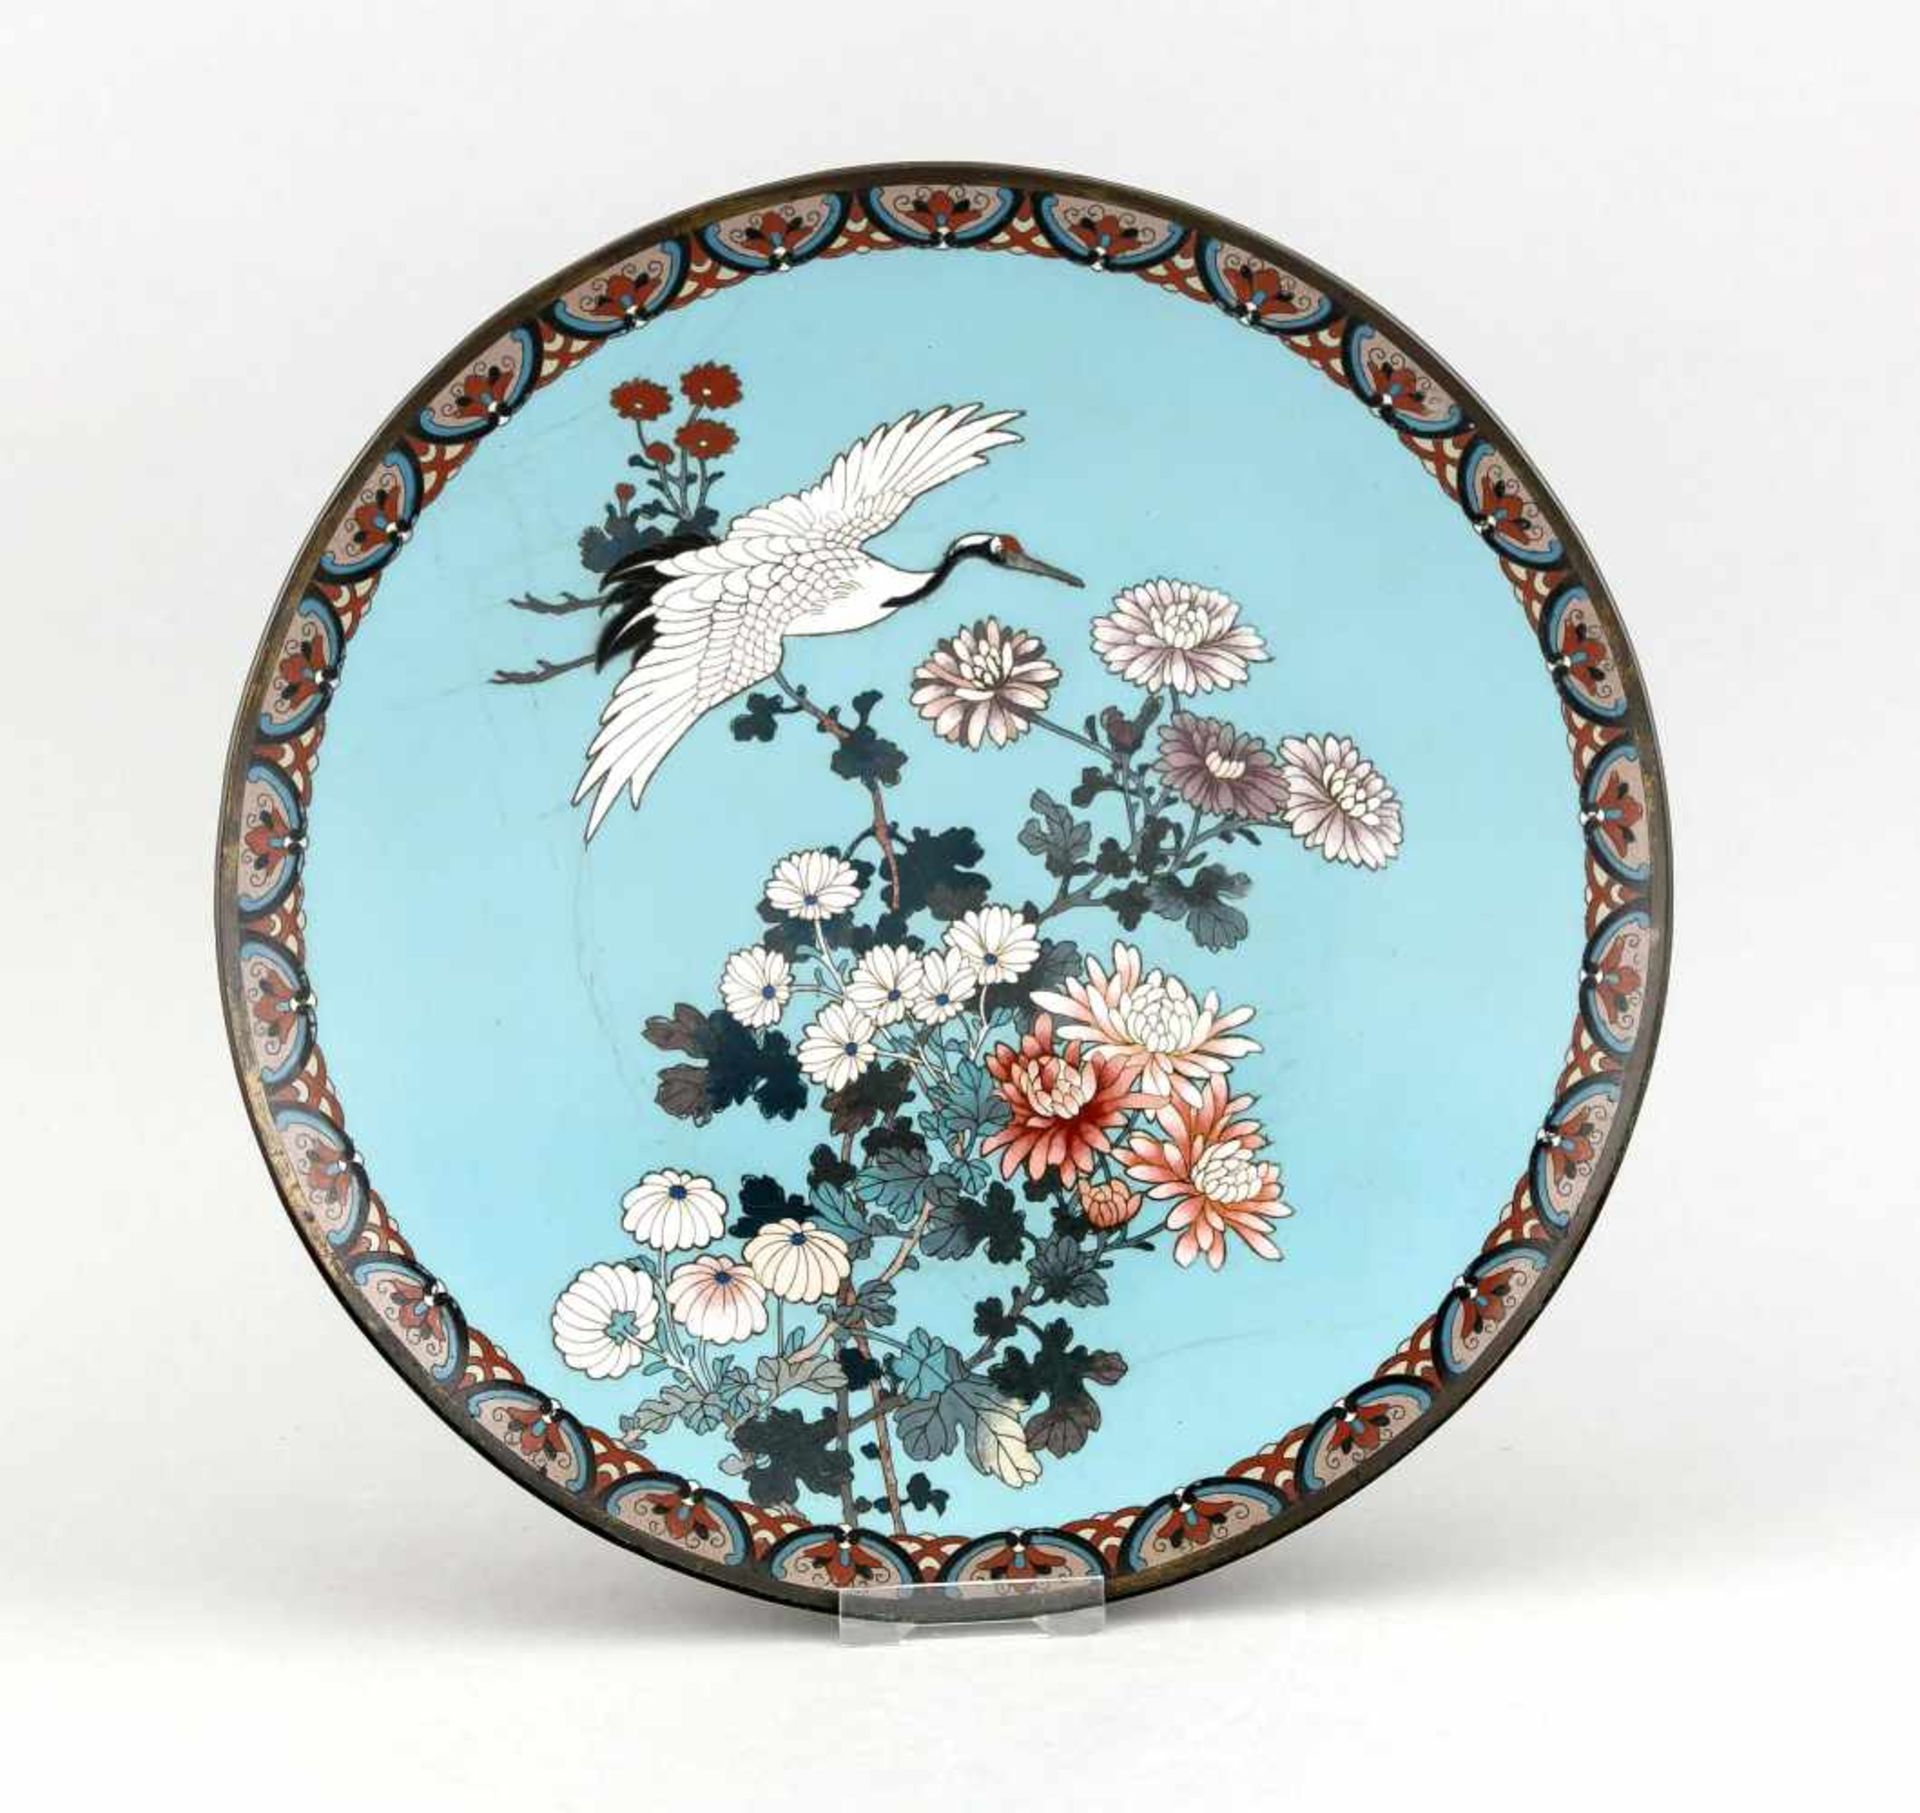 Cloisonné-Teller, China, 19. Jh., Blütenzweige und Kranich vor türkis-blauem Hintergrund,